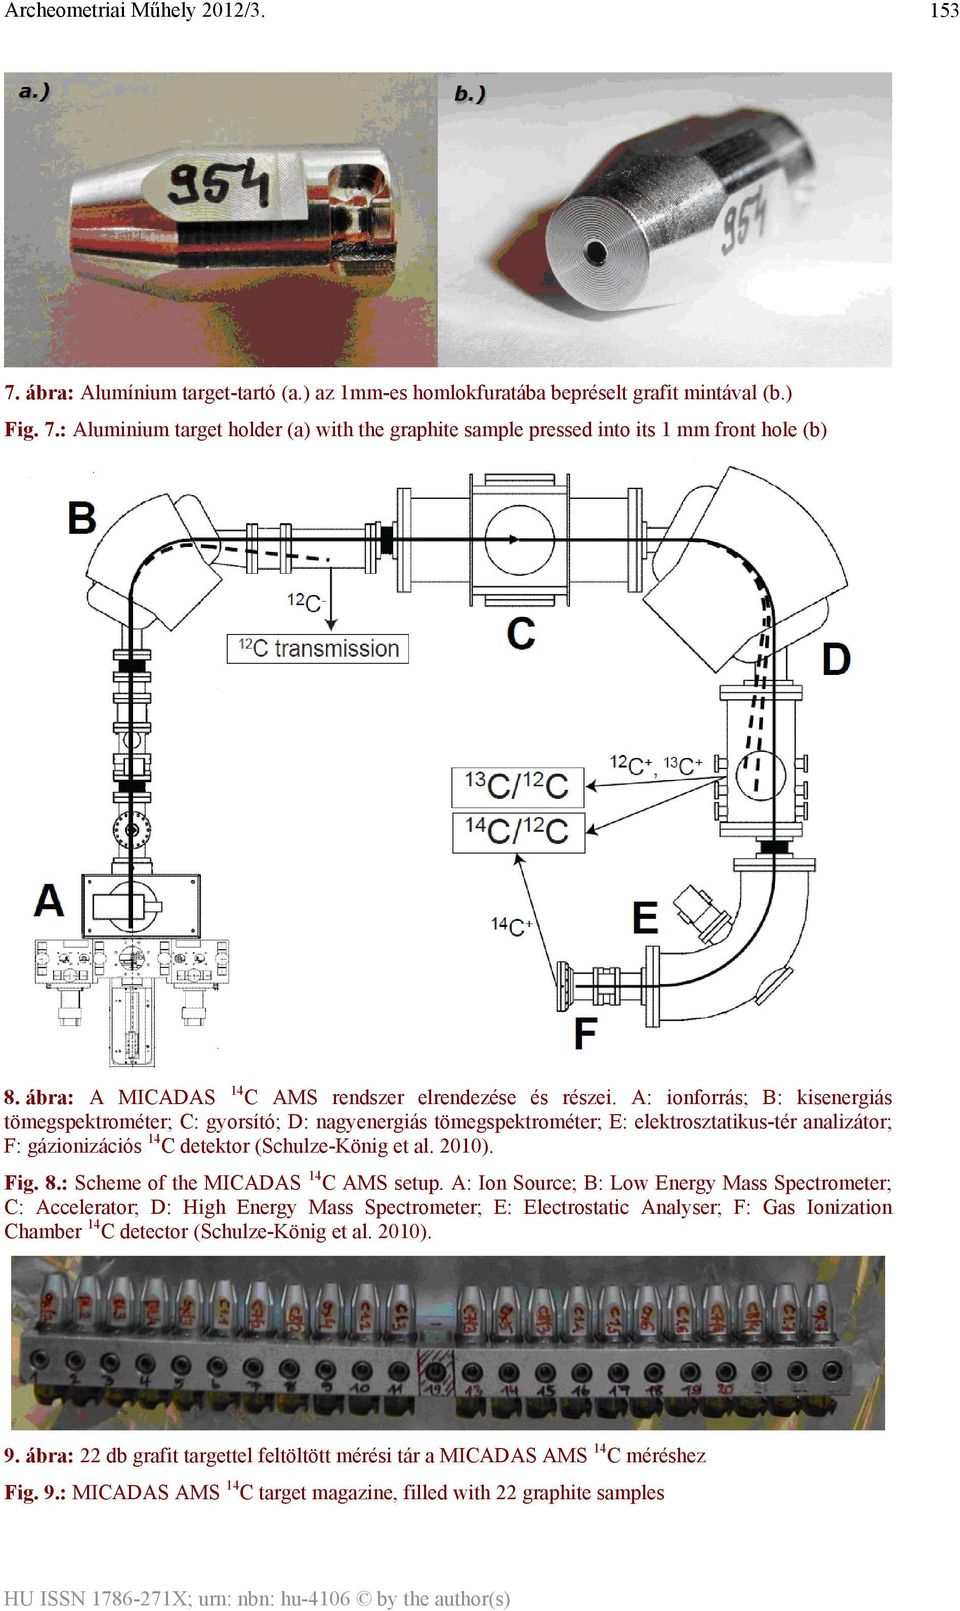 A: ionforrás; B: kisenergiás tömegspektrométer; C: gyorsító; D: nagyenergiás tömegspektrométer; E: elektrosztatikus-tér analizátor; F: gázionizációs 14 C detektor (Schulze-König et al. 2010). Fig. 8.